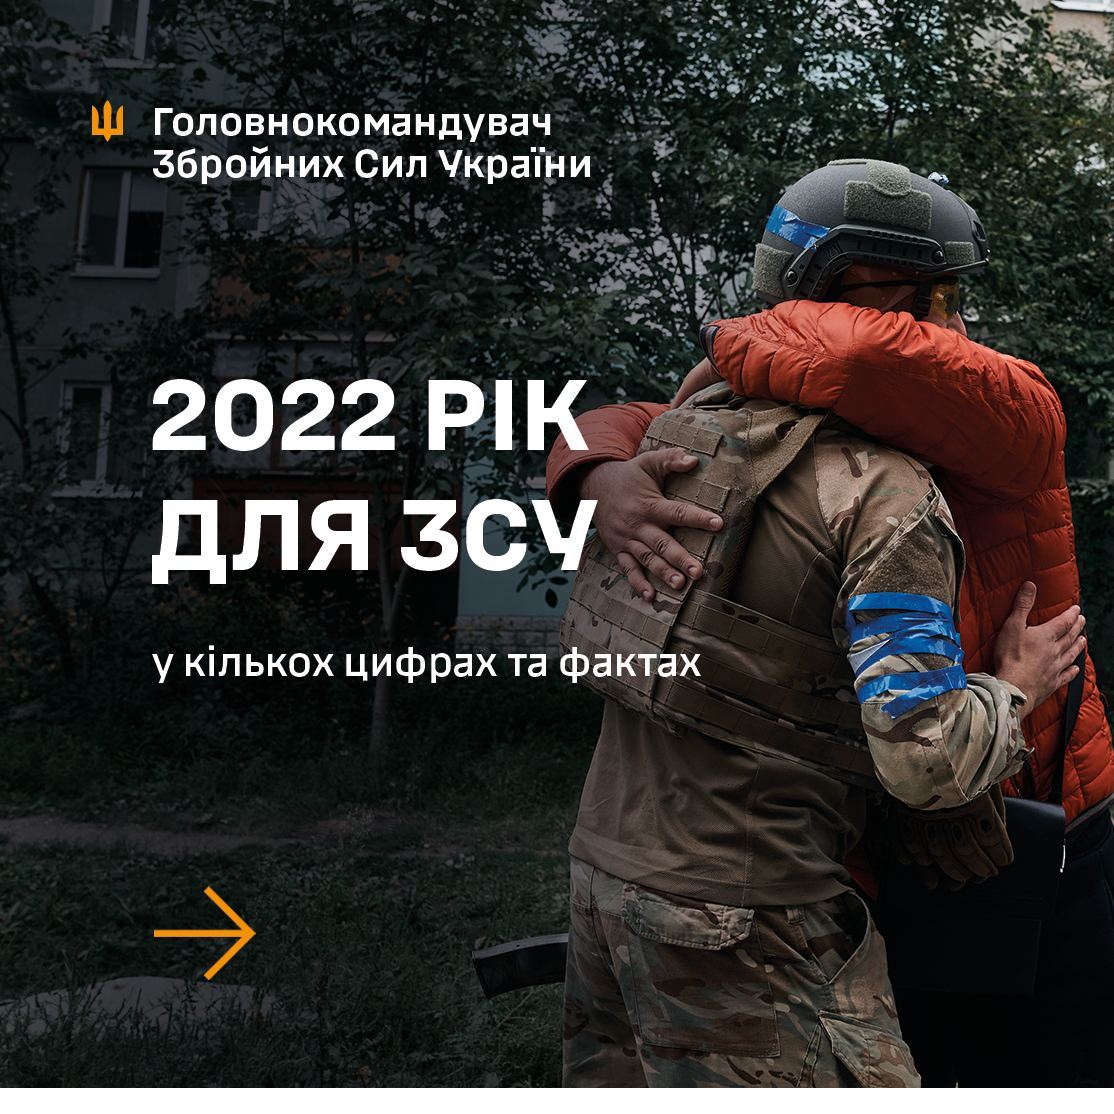 Главком ВСУ Валерий Залужный подвёл военные итоги 2022 года